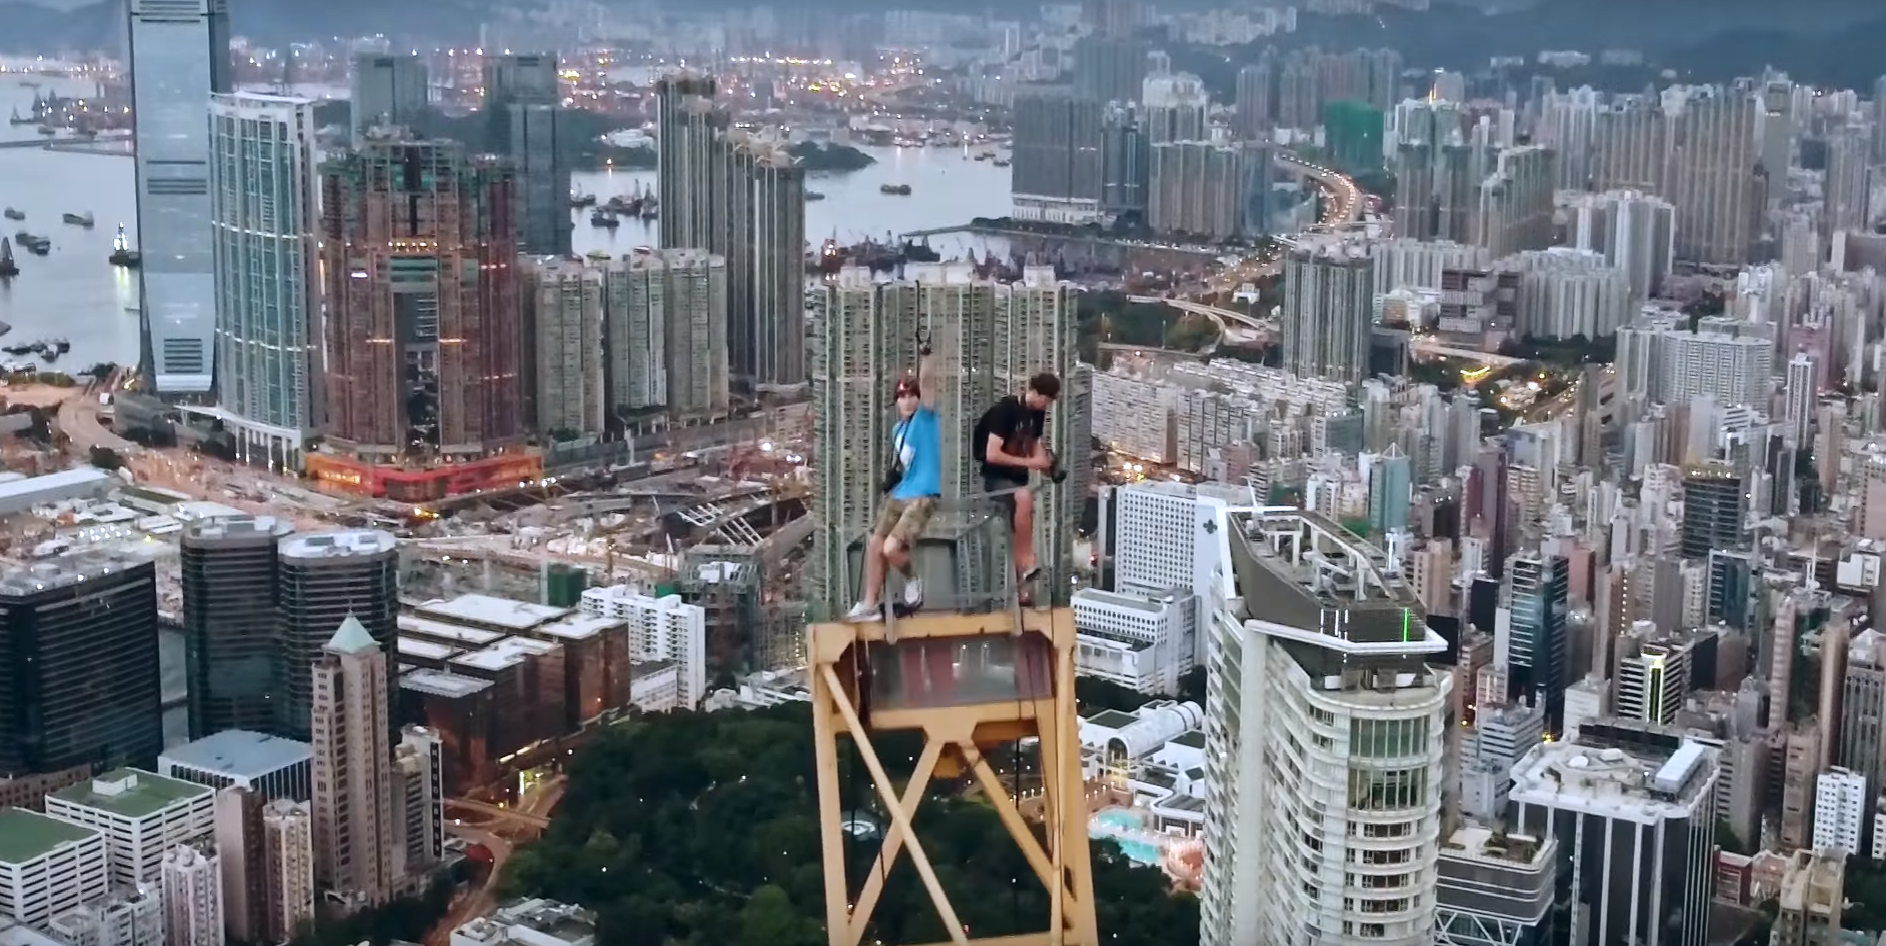 Escalan sin protección un rascacielos de Hong Kong